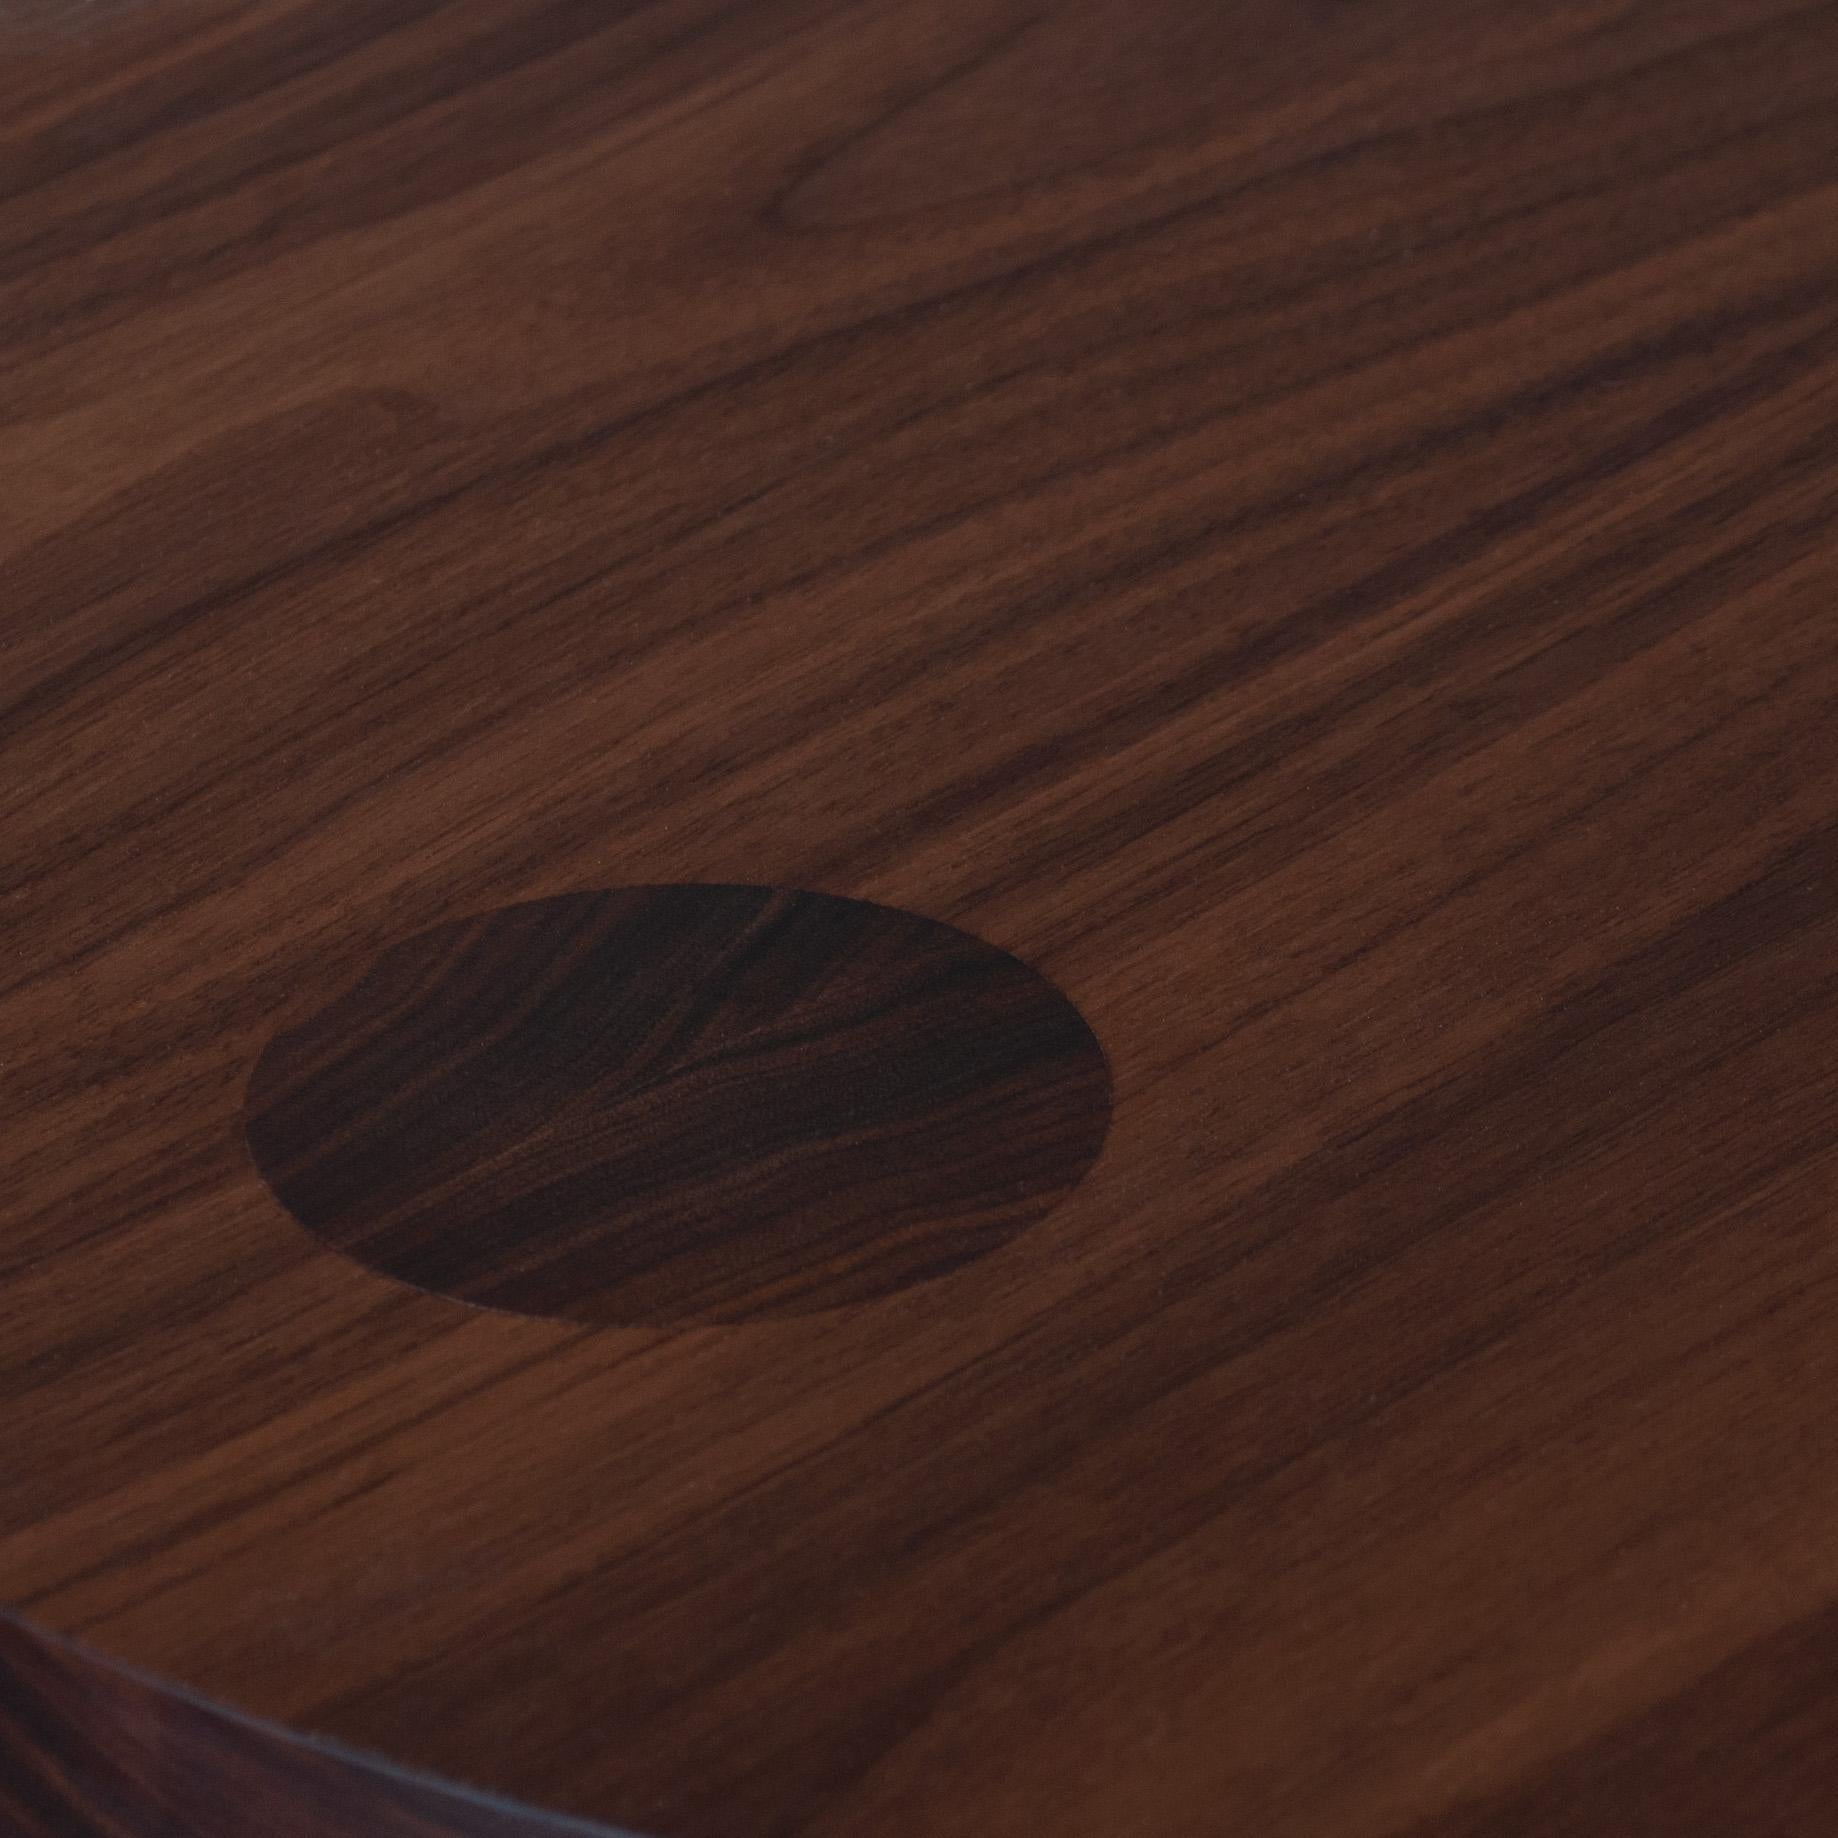 Table d'appoint Pillar en noyer noir d'Amérique, fabriquée à la main. Conçu par Sum furniture et fabriqué à la main selon des techniques traditionnelles avec le meilleur noyer noir américain. Détail d'assemblage à queue d'aronde surdimensionné,